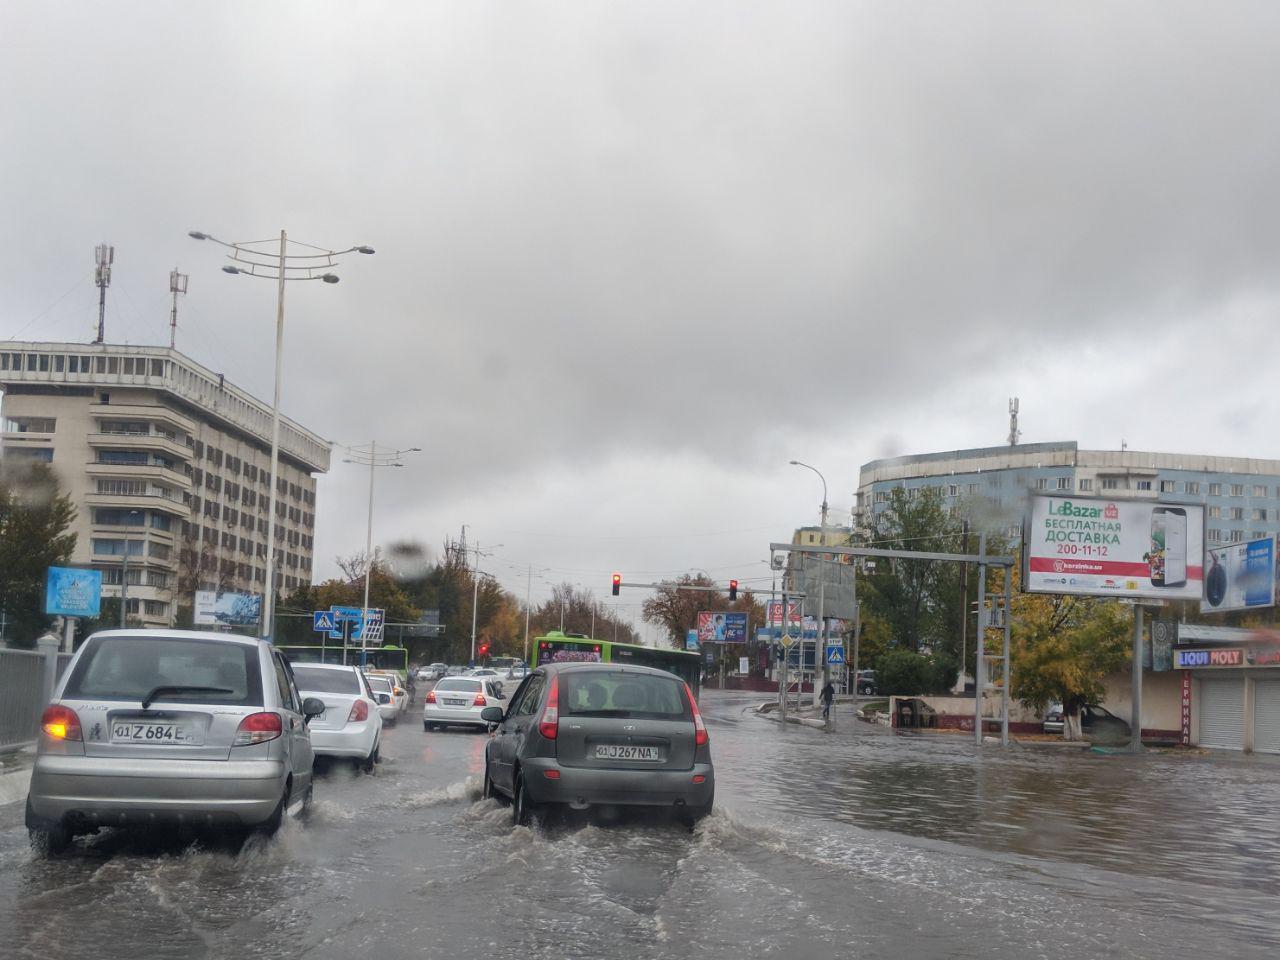 Потоп в Ташкенте - городские службы уже 10 лет не могут (или не хотят) восстановить разрушенную ливневую канализацию и систему арыков